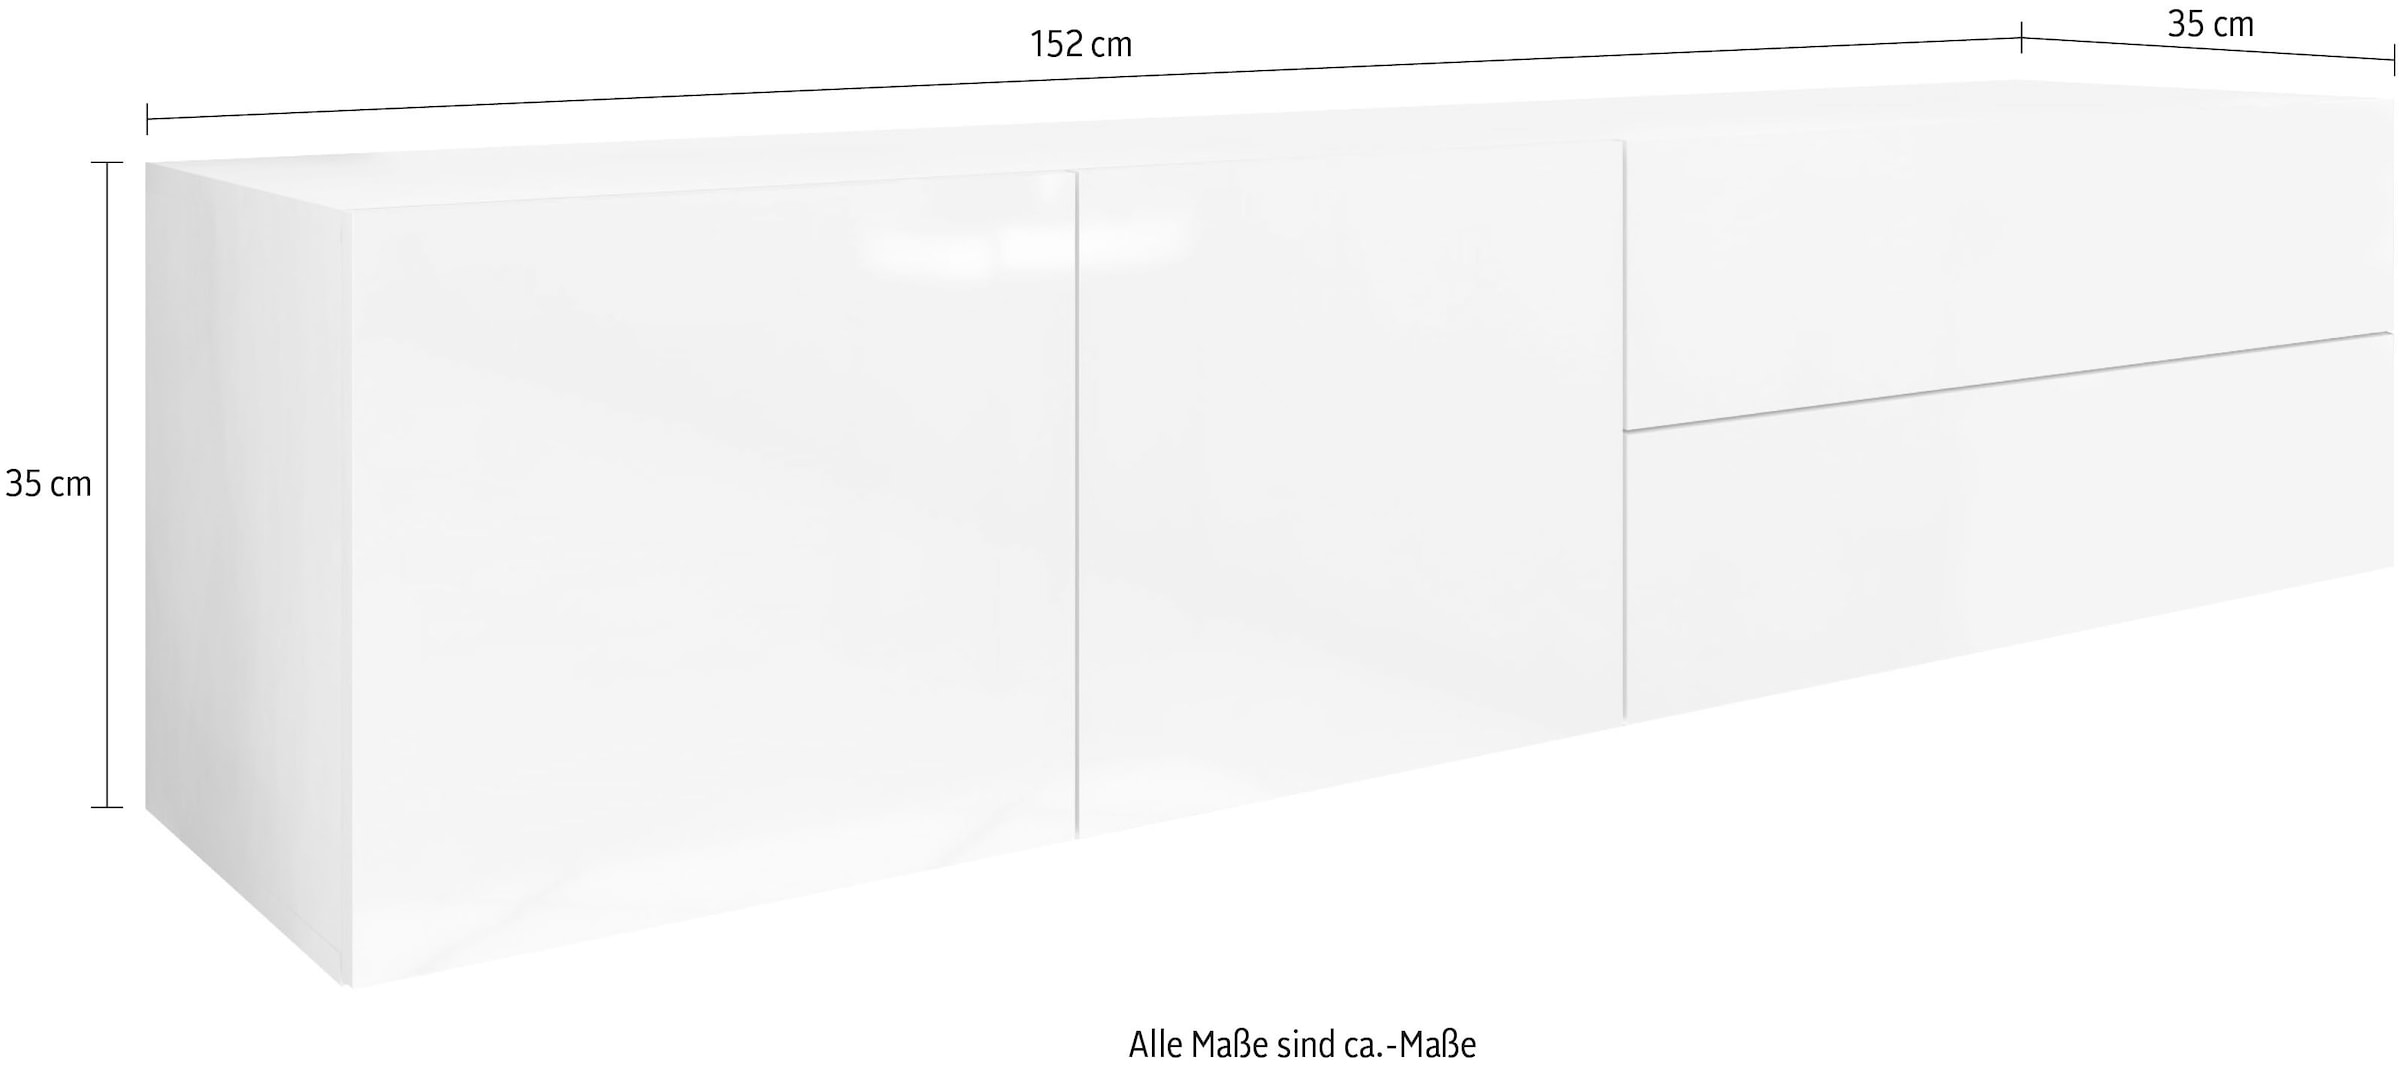 borchardt Möbel Lowboard jetzt kaufen »Vaasa«, cm, 152 nur Breite hängend